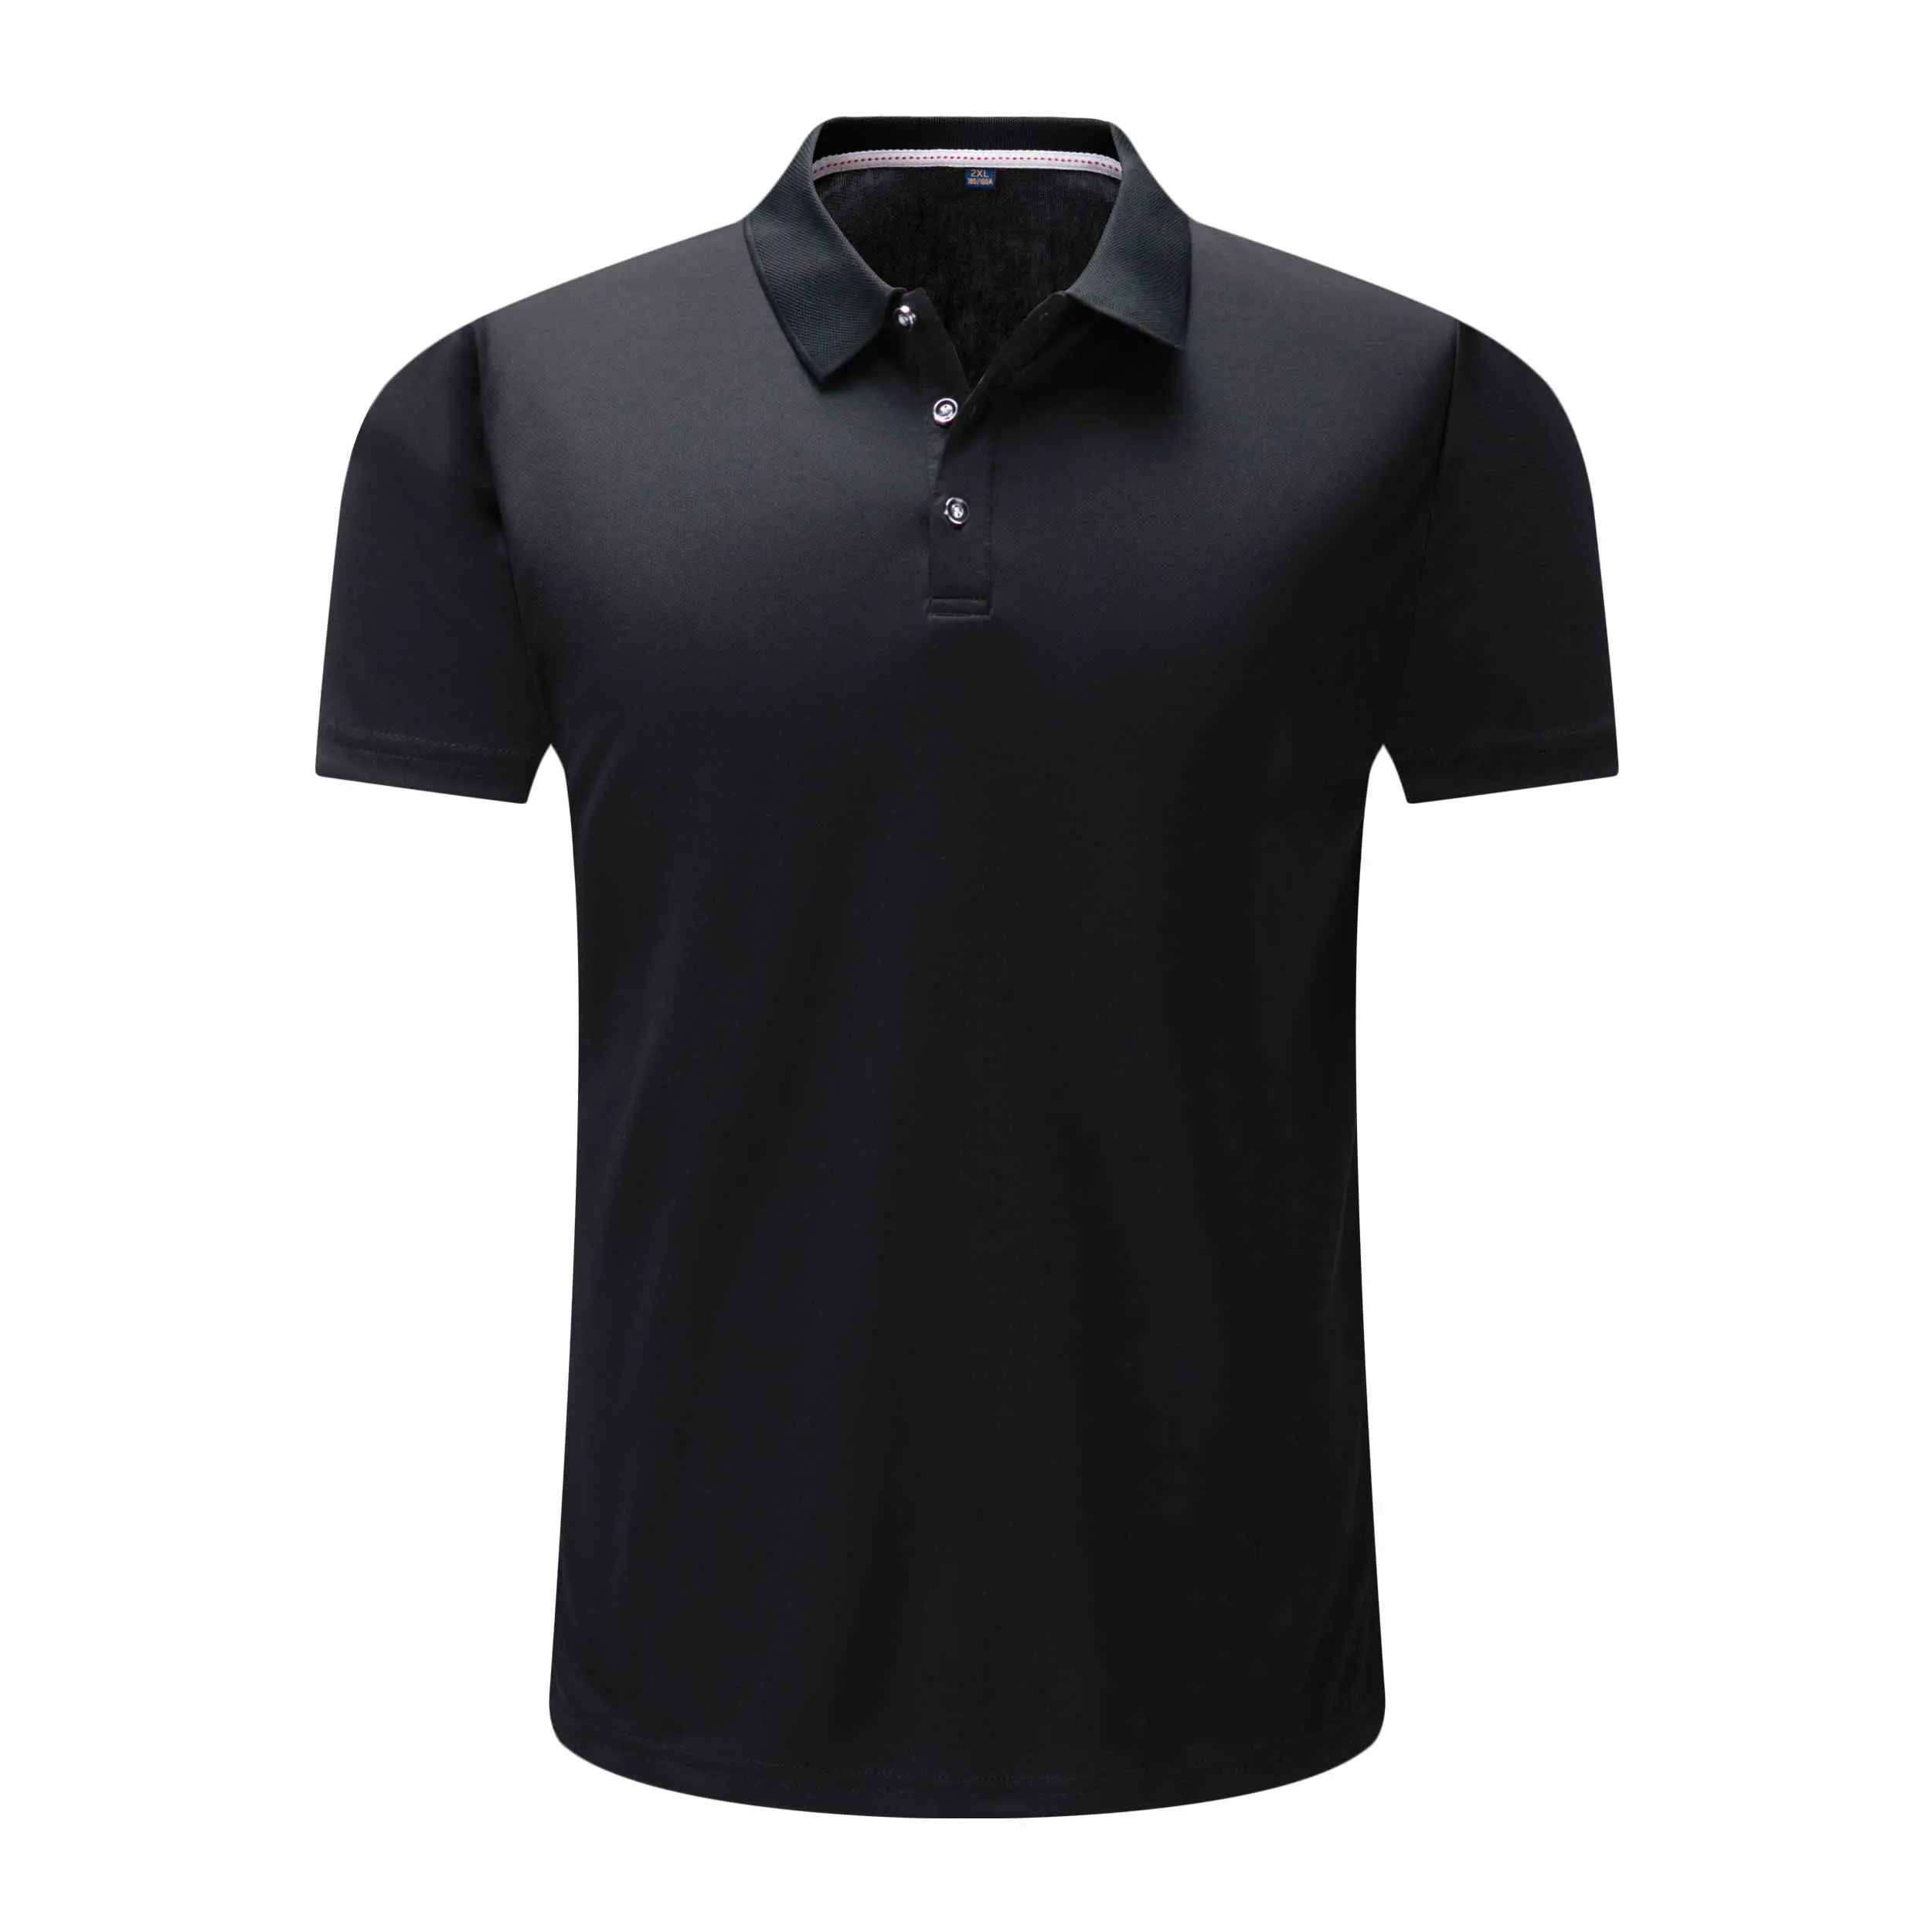 Unisex Middelgrote Tennis Shirt Kleding Gender-neutrale kleding volwassenen Tops & T-shirts Polos Jaren 1980 Nylon Polo 